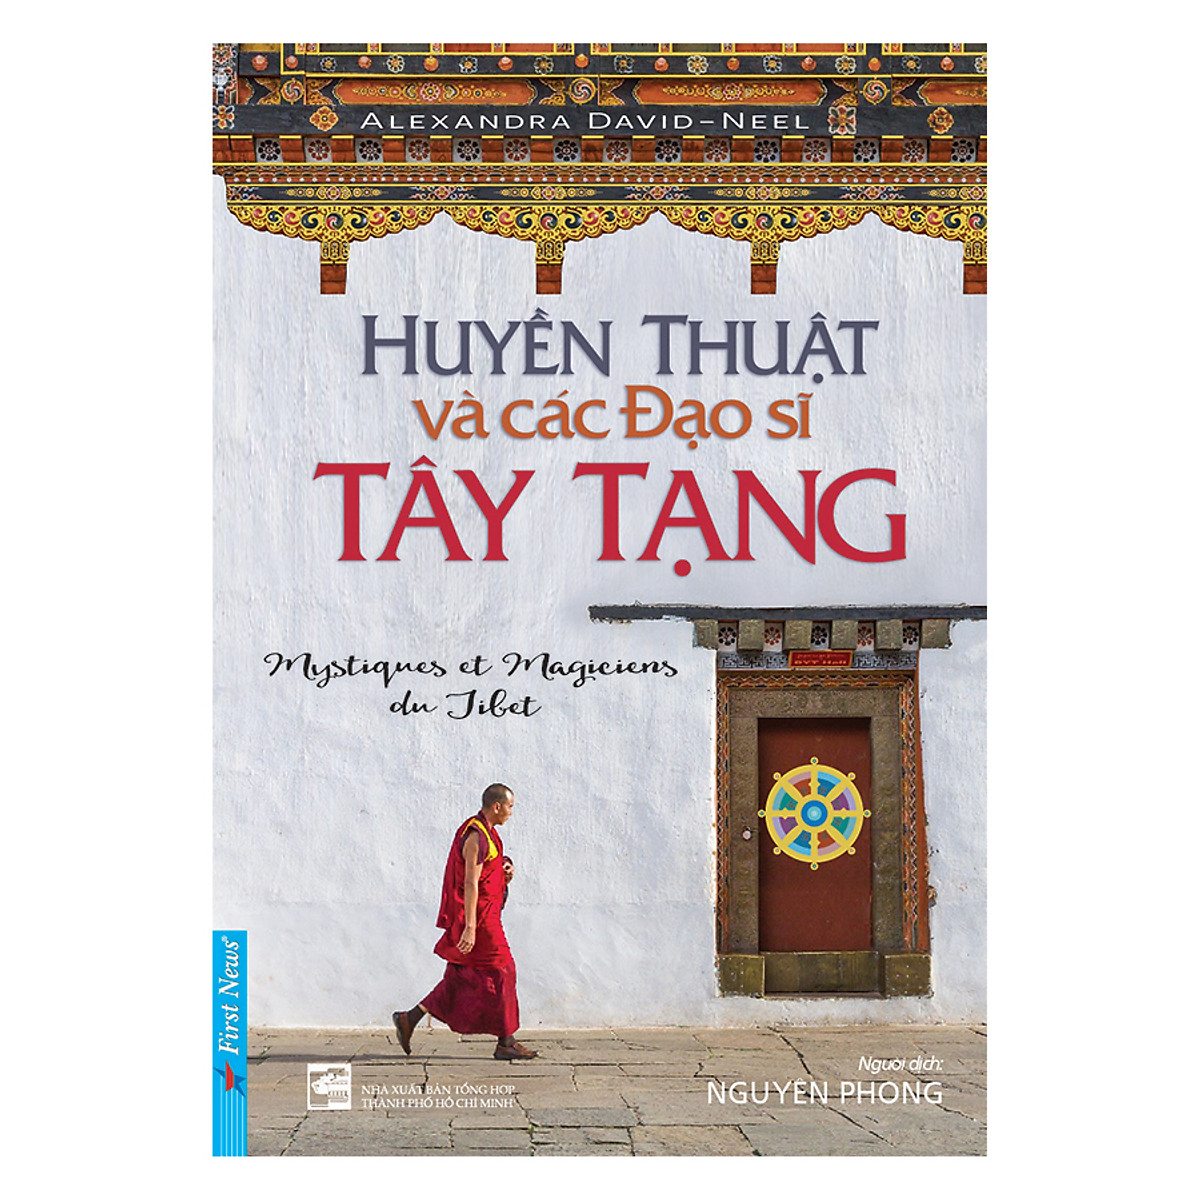 Hình ảnh Combo 3 cuốn sách:  Trở Về Từ Cõi Sáng + Huyền Thuật Và Các Đạo Sĩ Tây Tạng + Cổ học tinh hoa (Tái Bản)